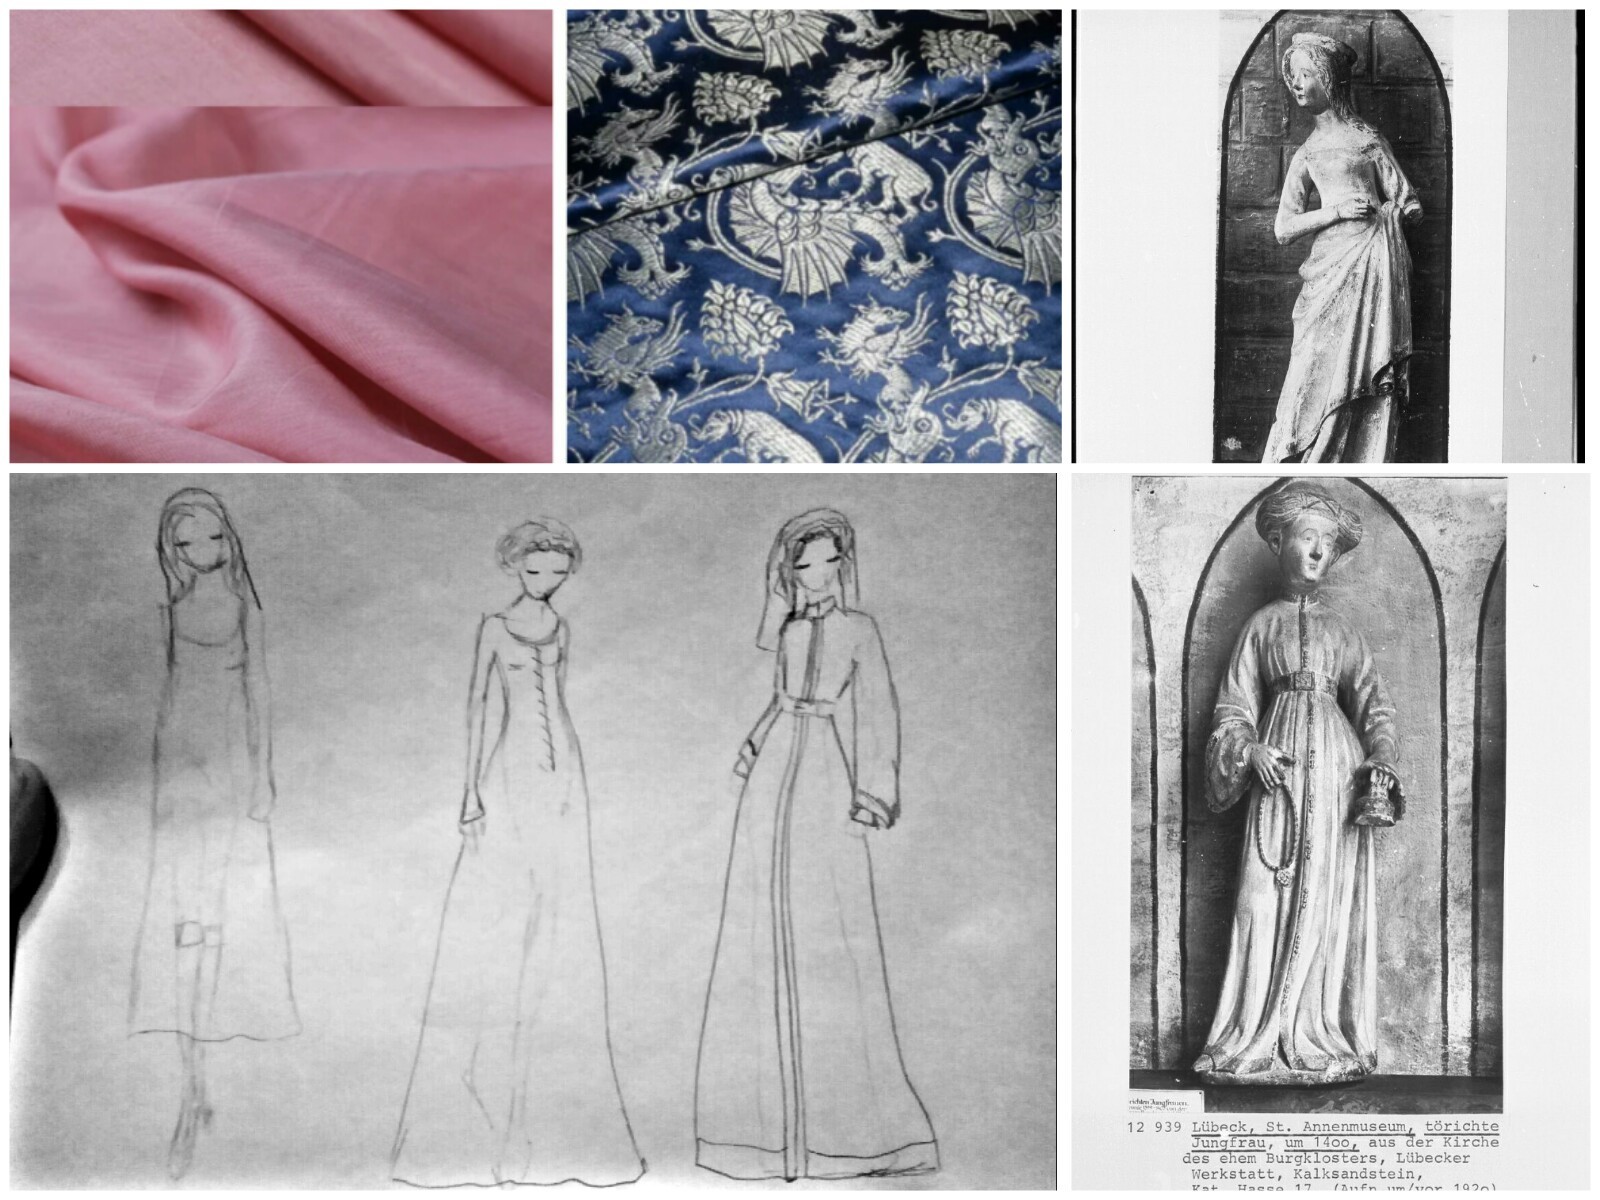 Cредневековые платья: женственный стиль минувших веков